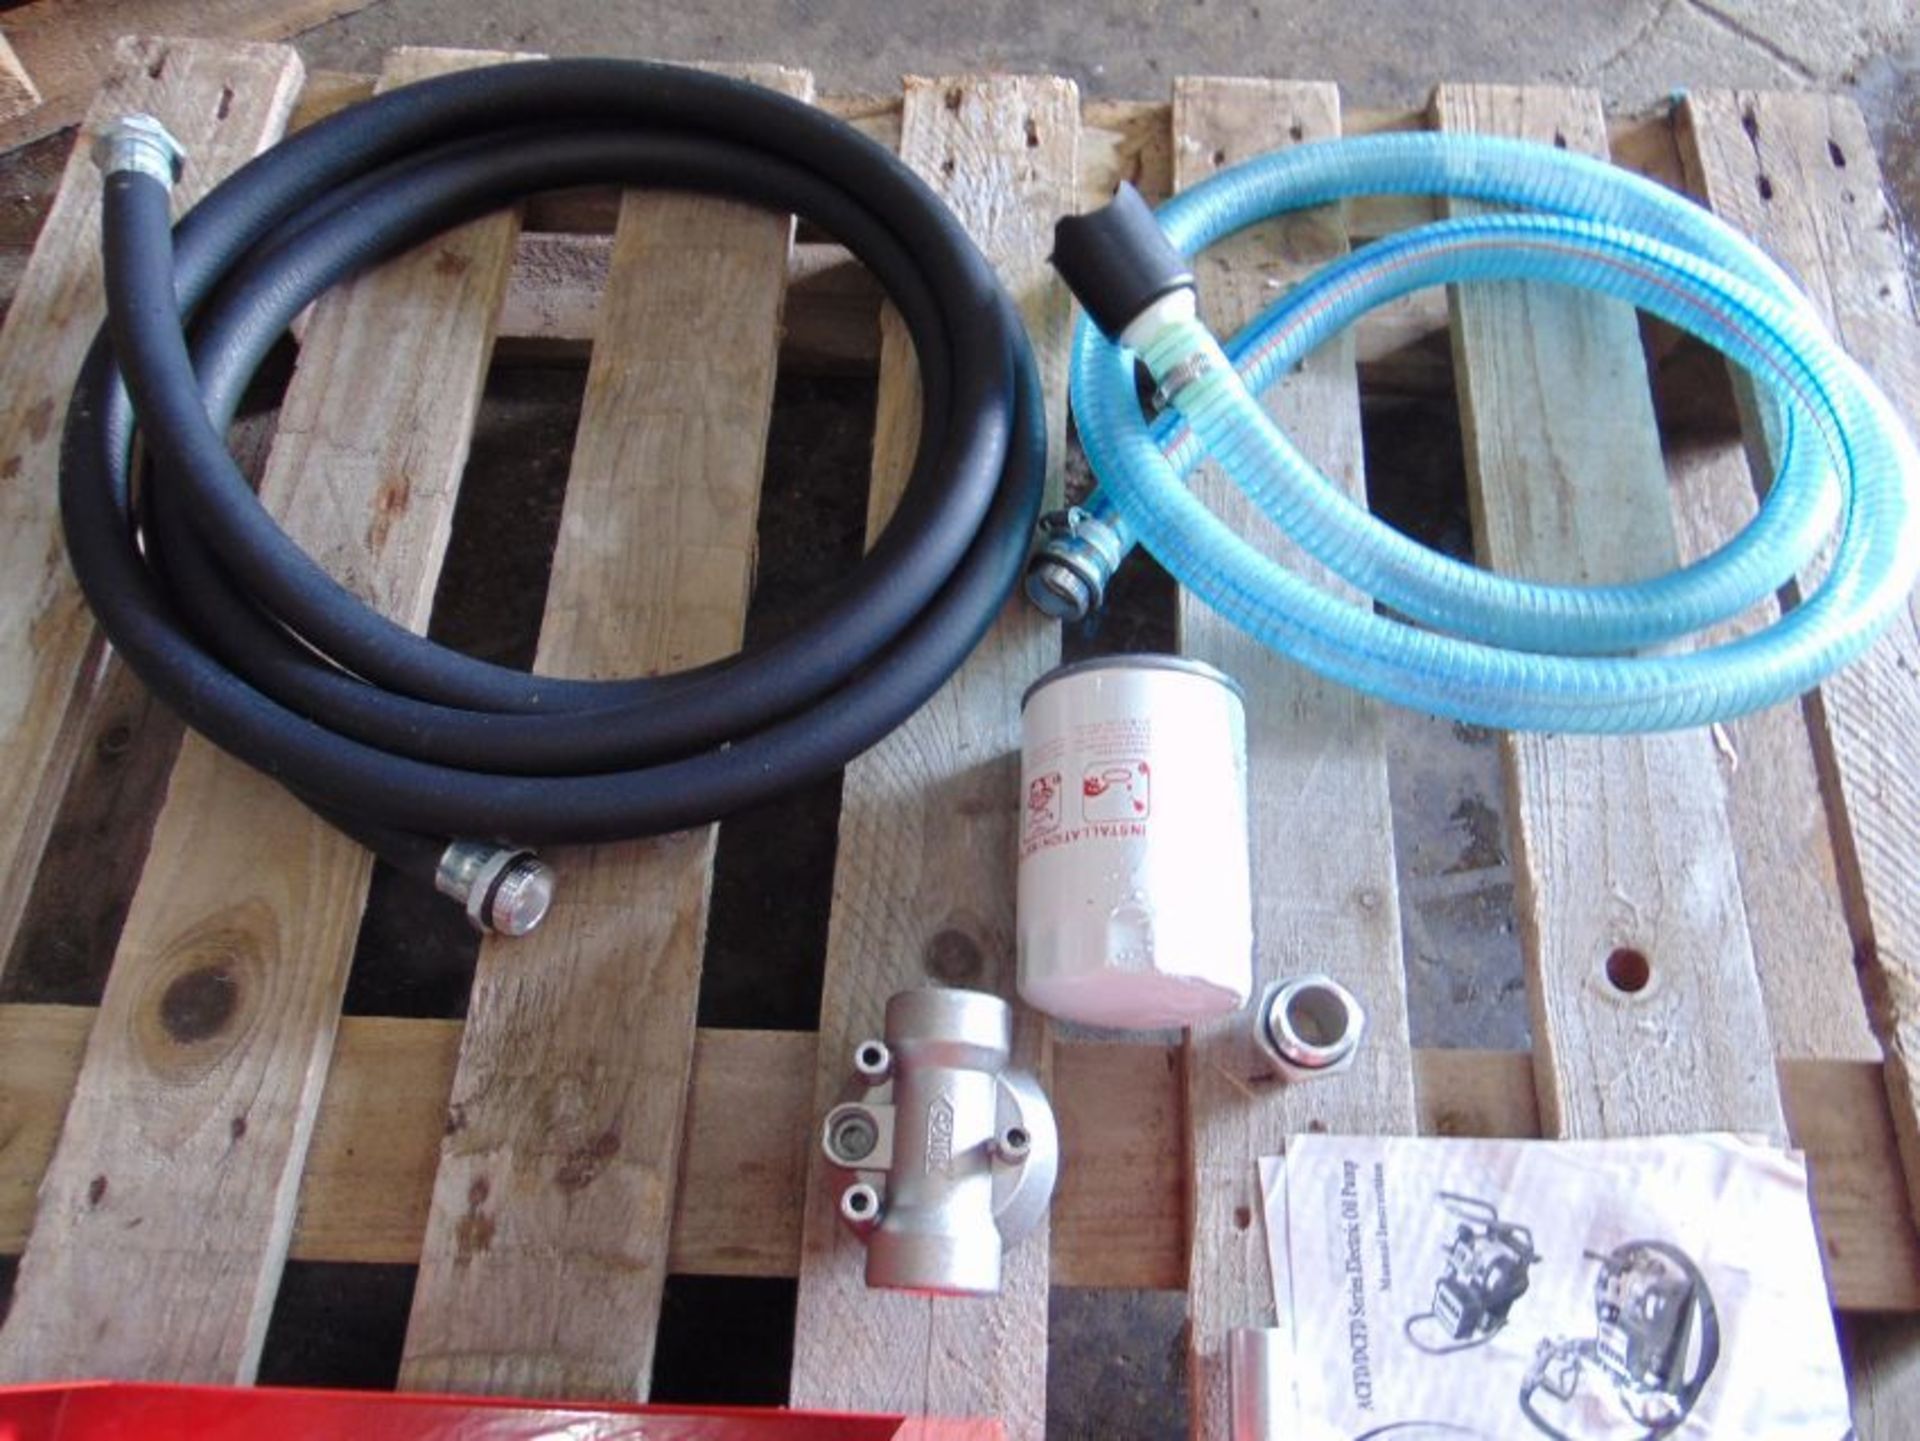 Unused AC60-M Diesel Transfer Pump Set c/w Nozzle, Hose etc - Image 7 of 8